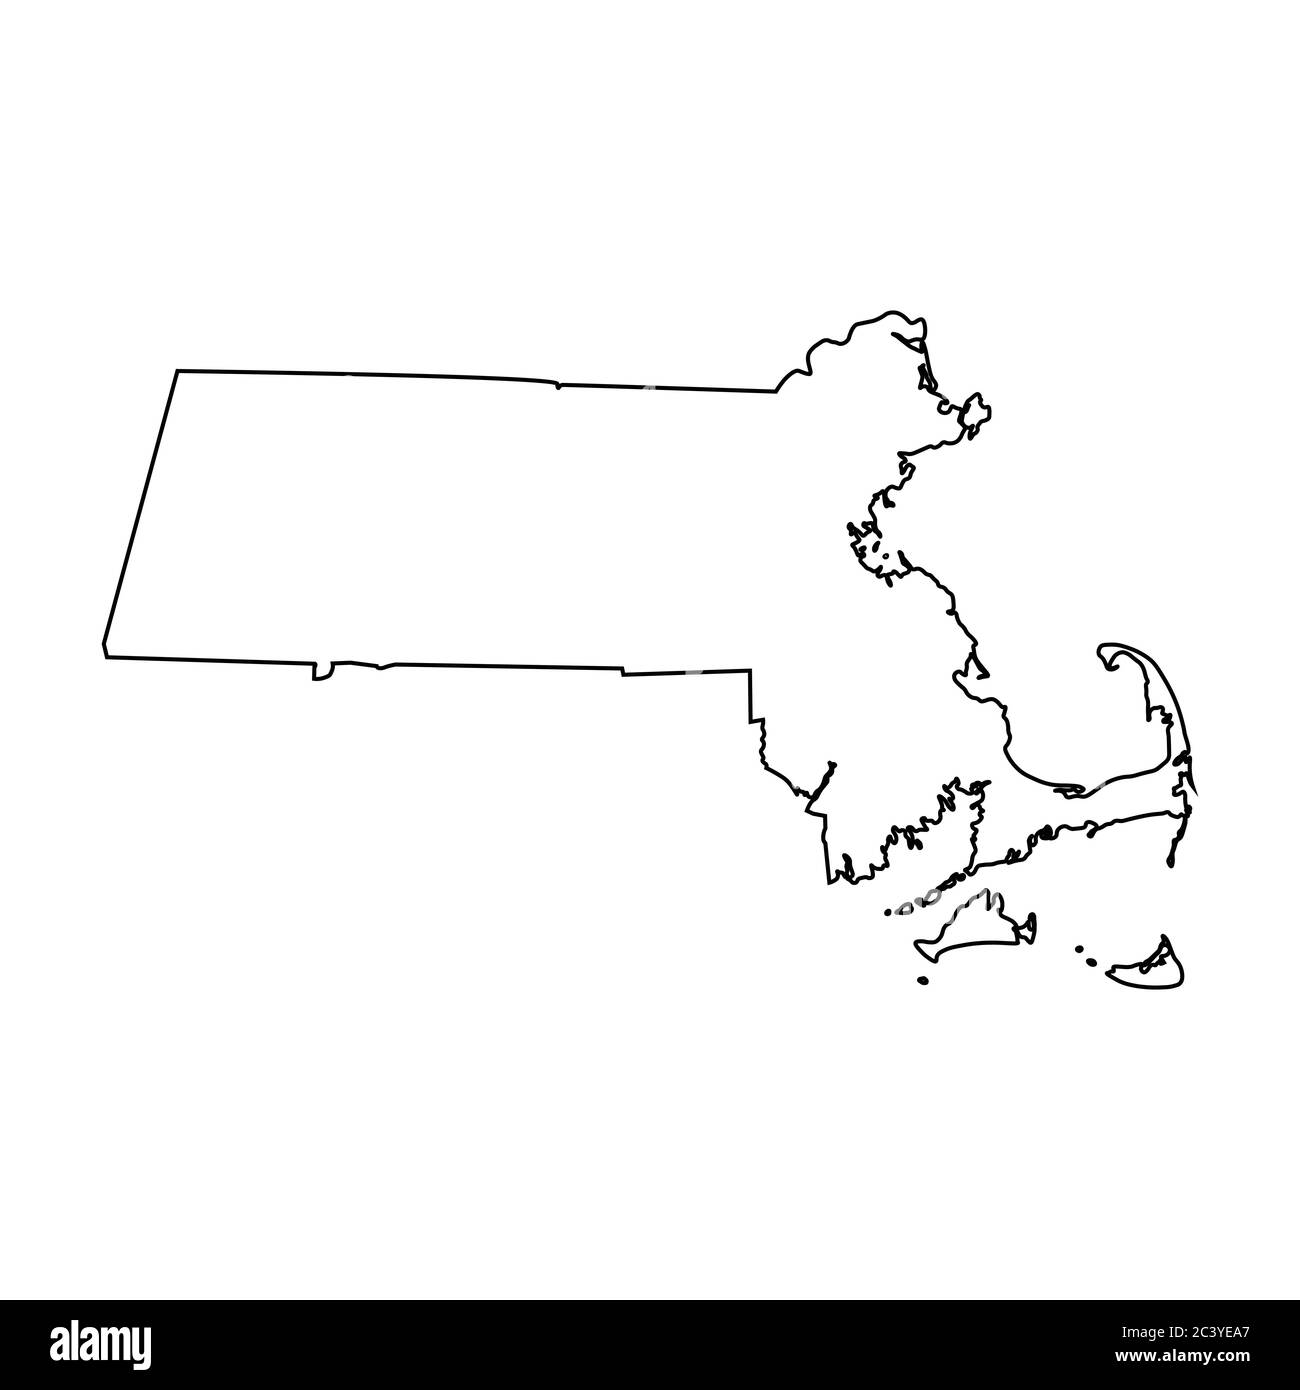 Cartes de l'état ma du Massachusetts. Carte de contour noire isolée sur fond blanc. Vecteur EPS Illustration de Vecteur